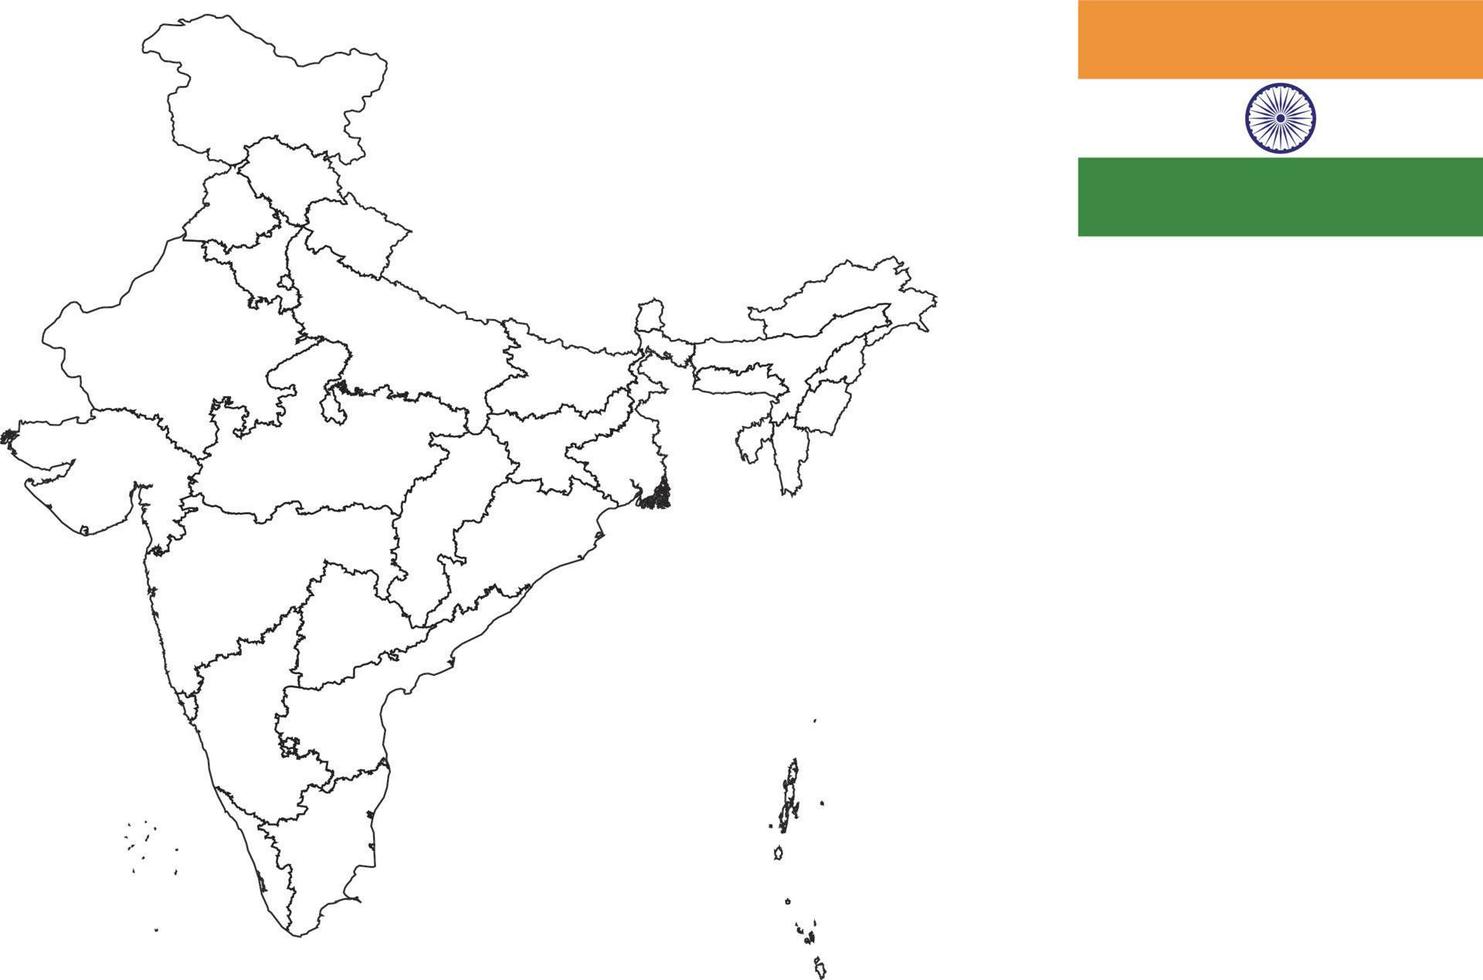 Karte und Flagge von Indien vektor